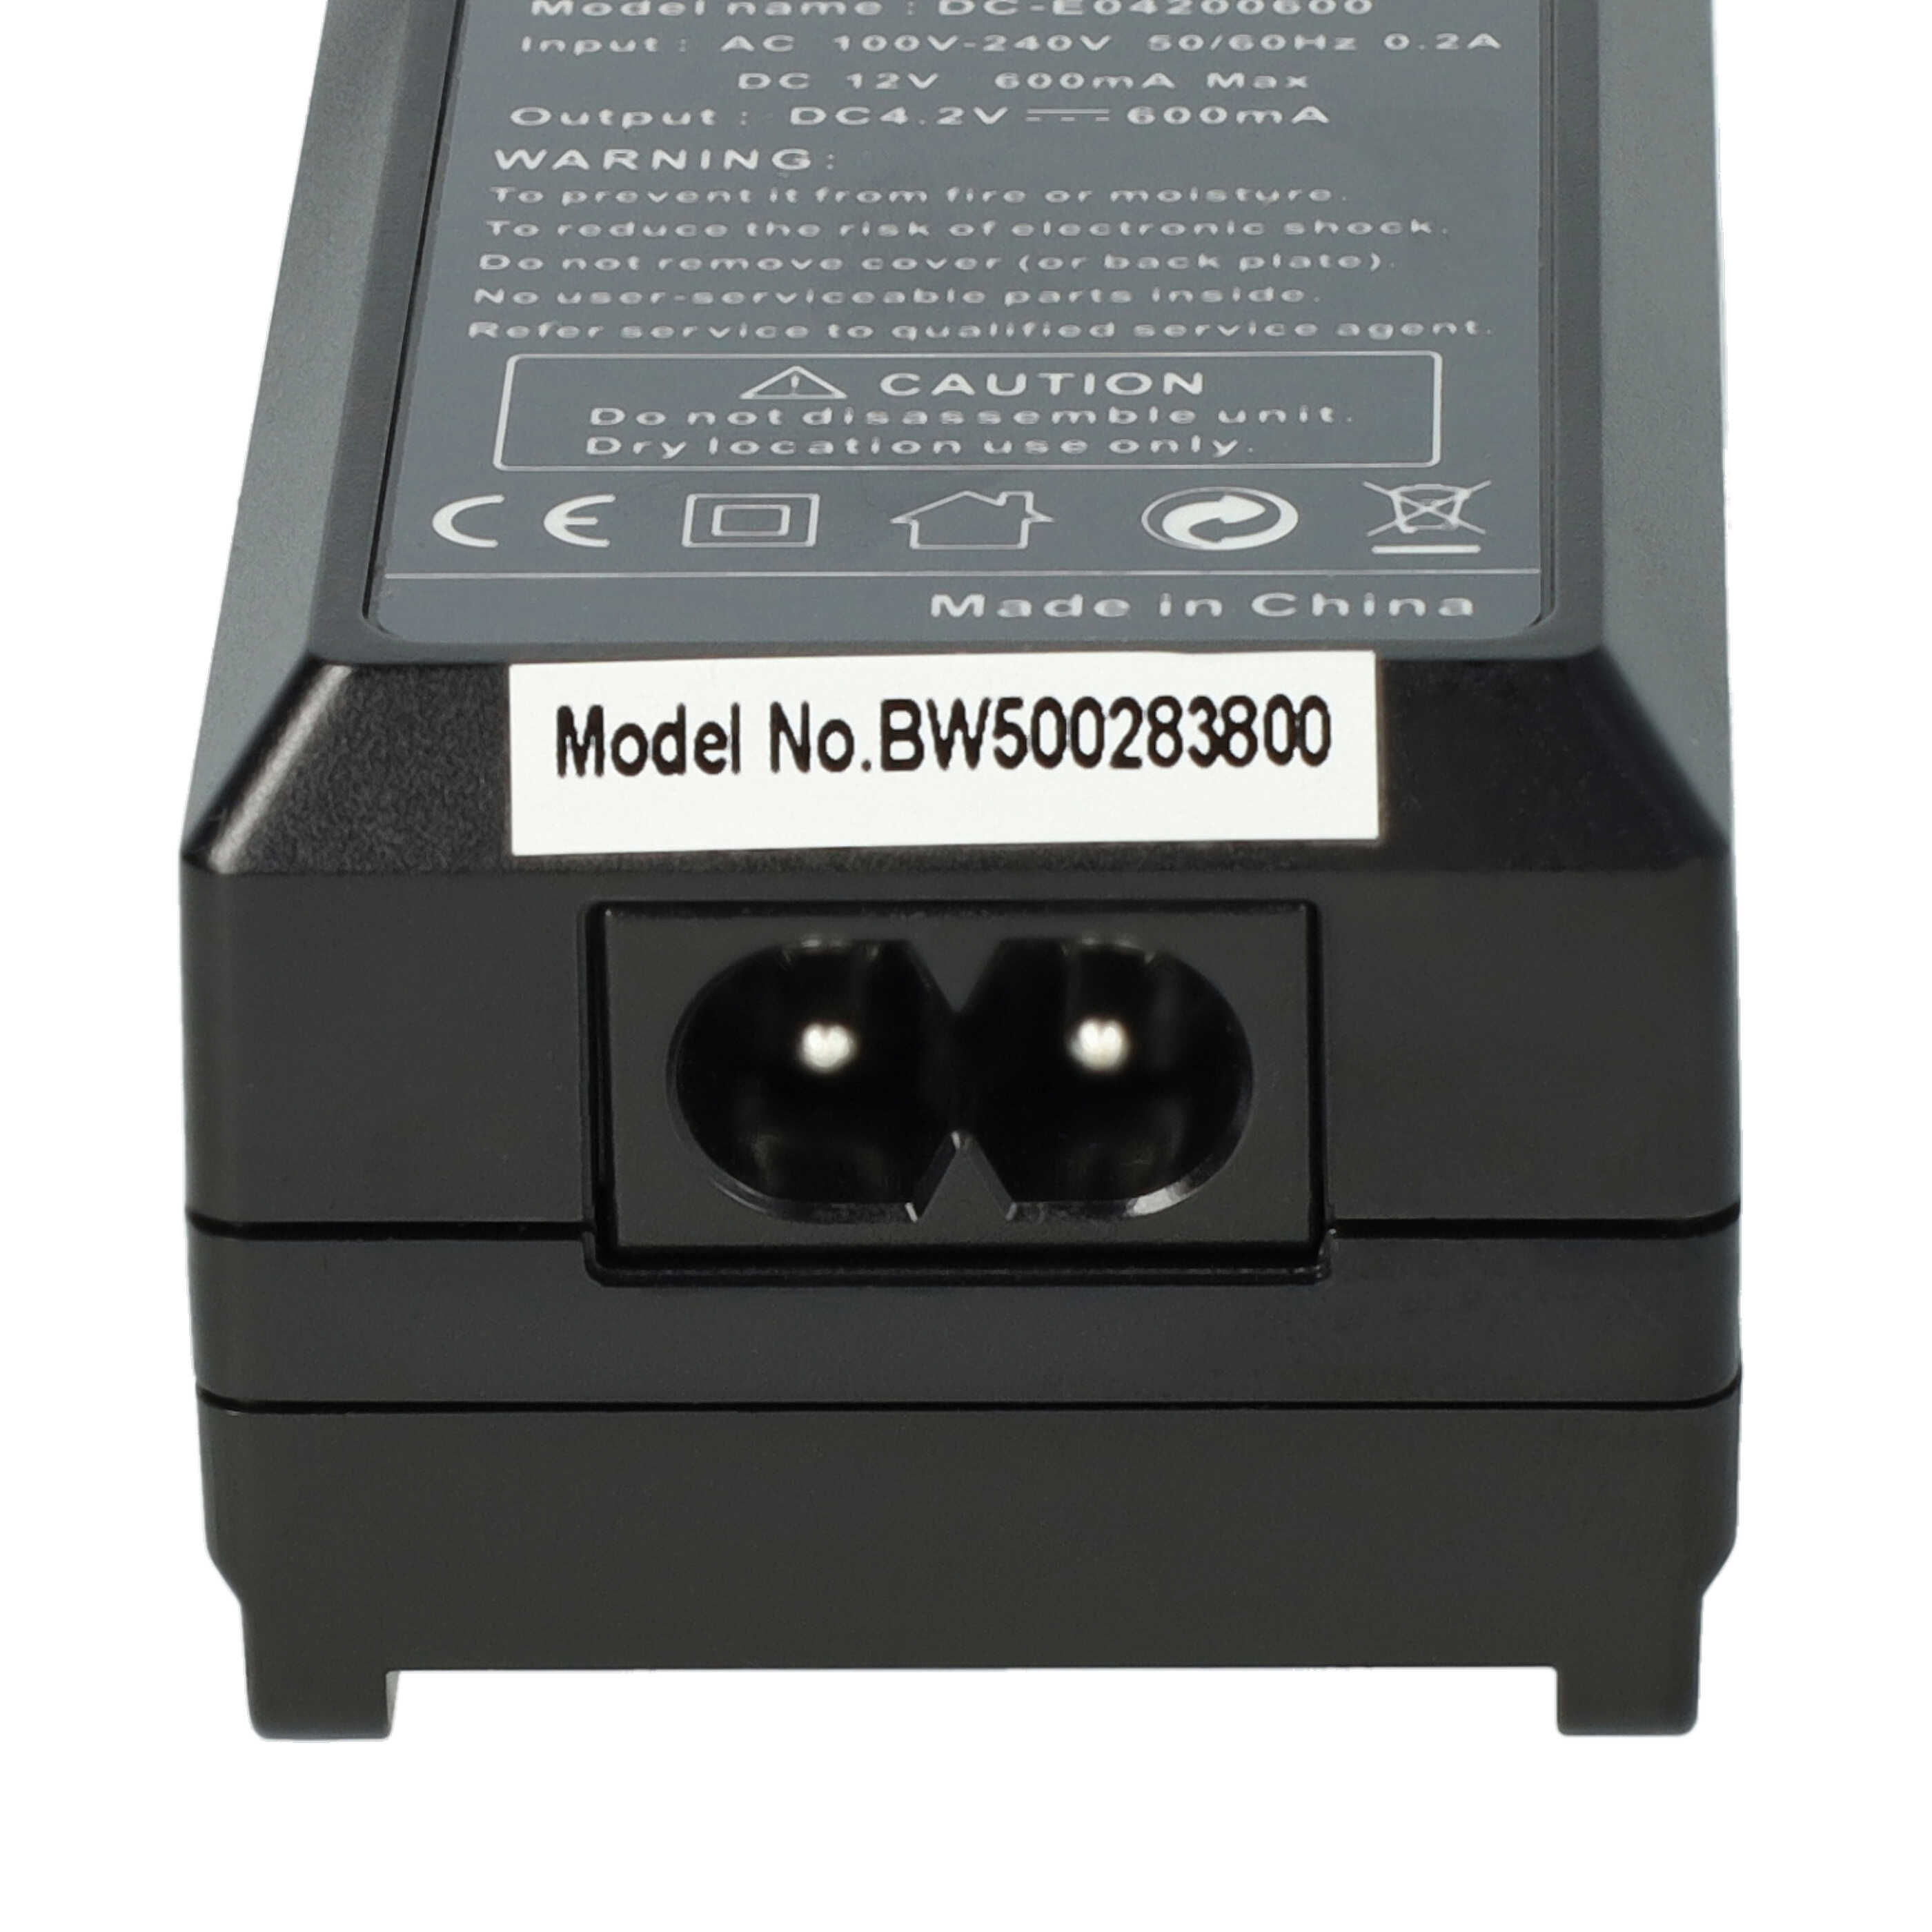 Caricabatterie + adattatore da auto per fotocamera Olympus - 0,6A 4,2V 88,5cm